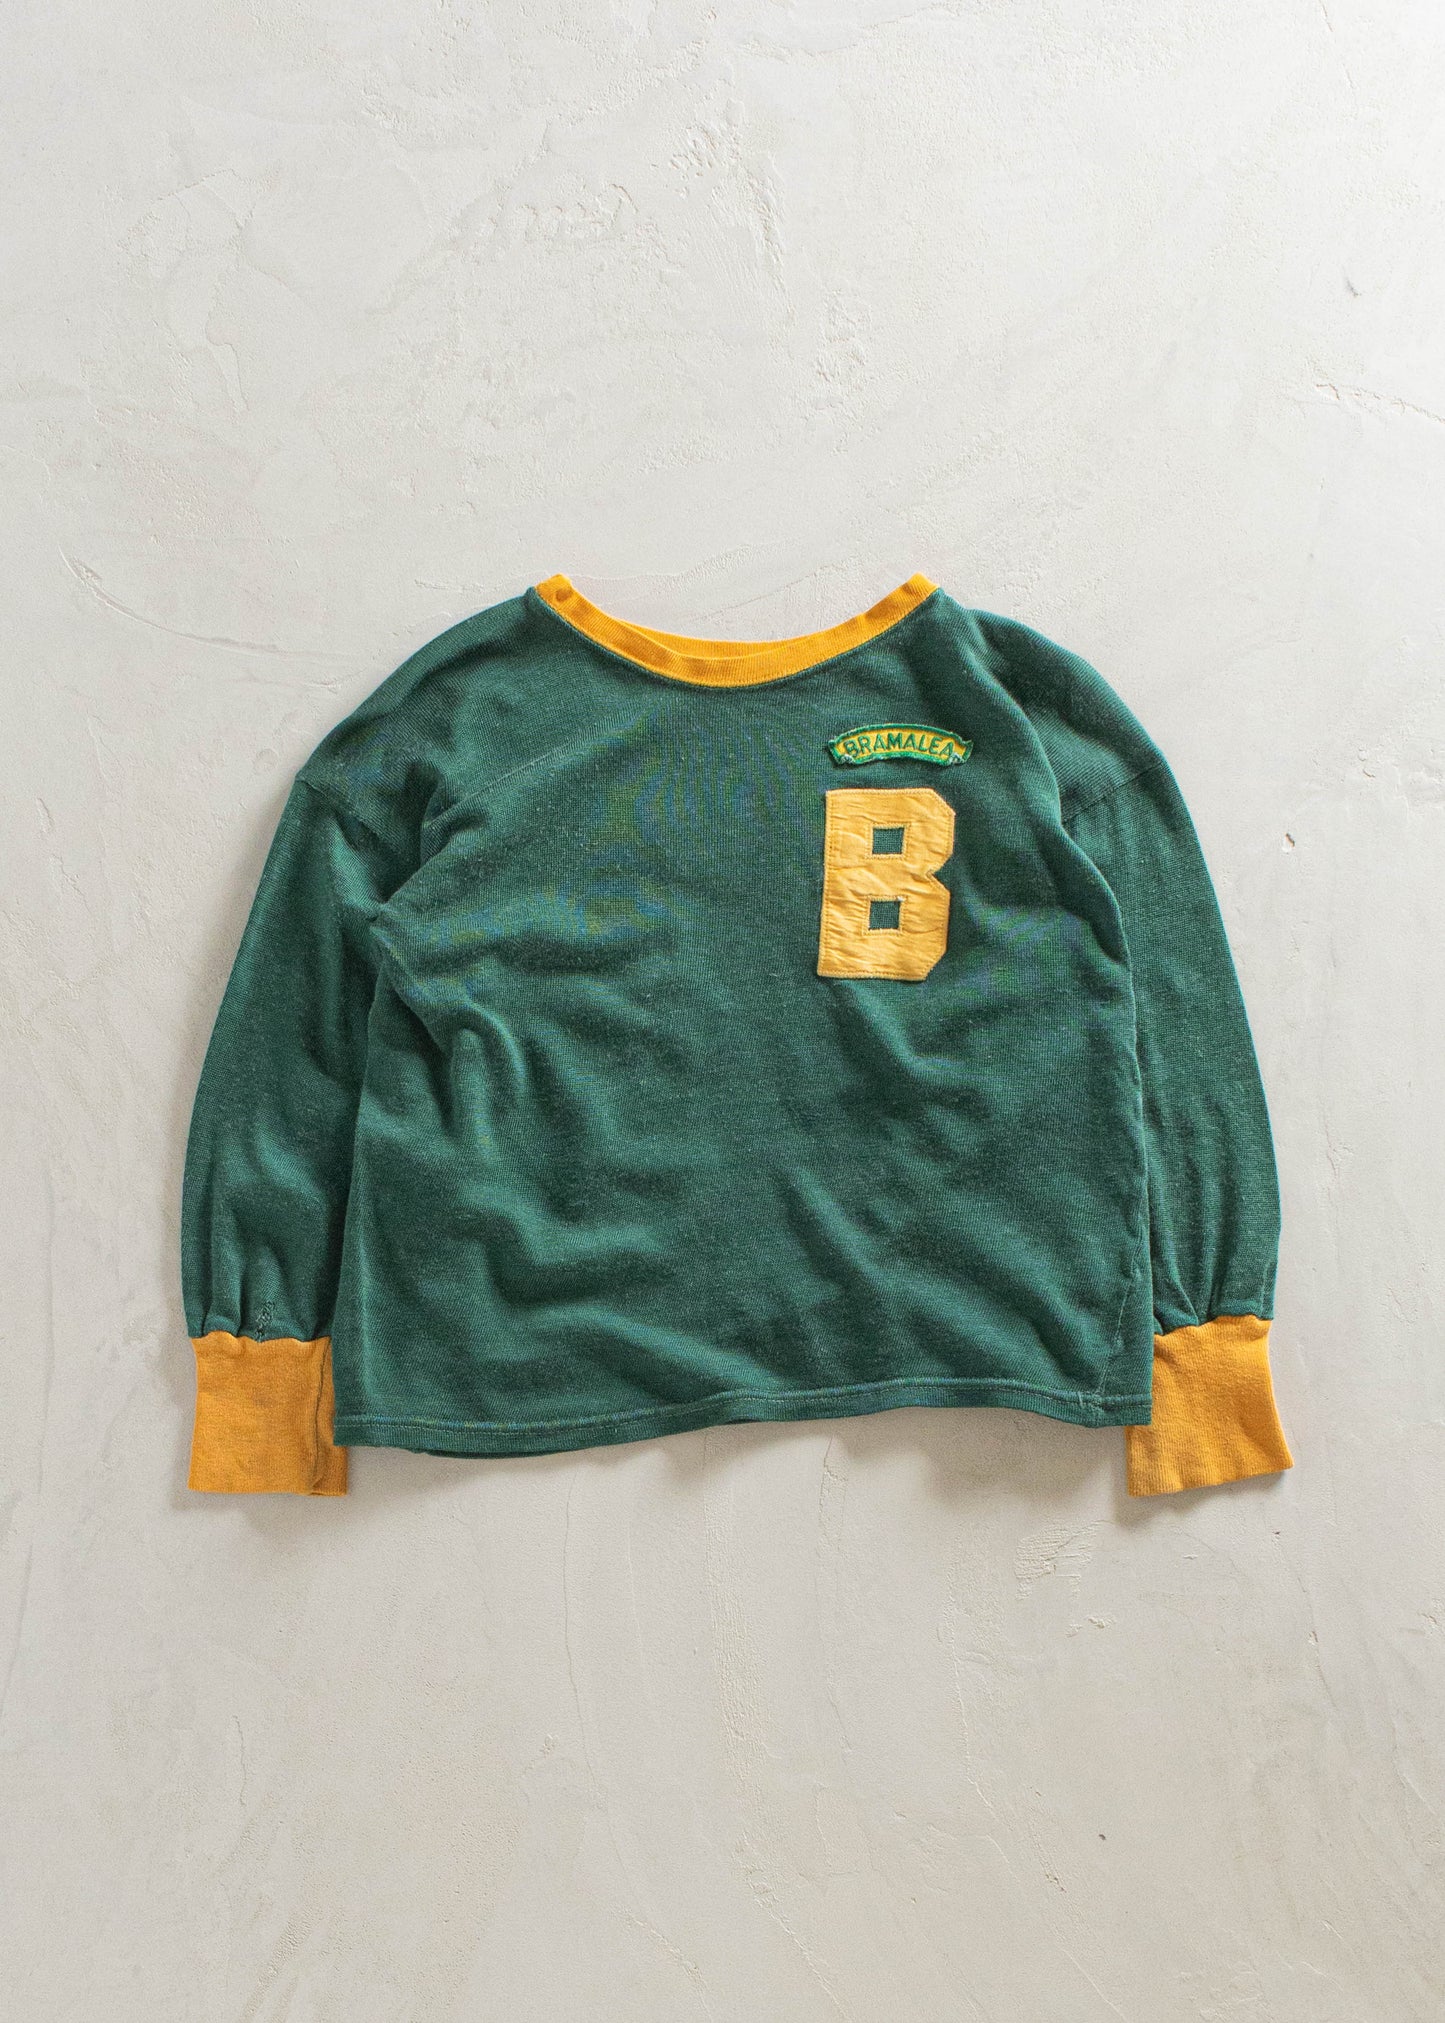 1980s Bramalea Long Sleeve Sport Jersey Size XS/S